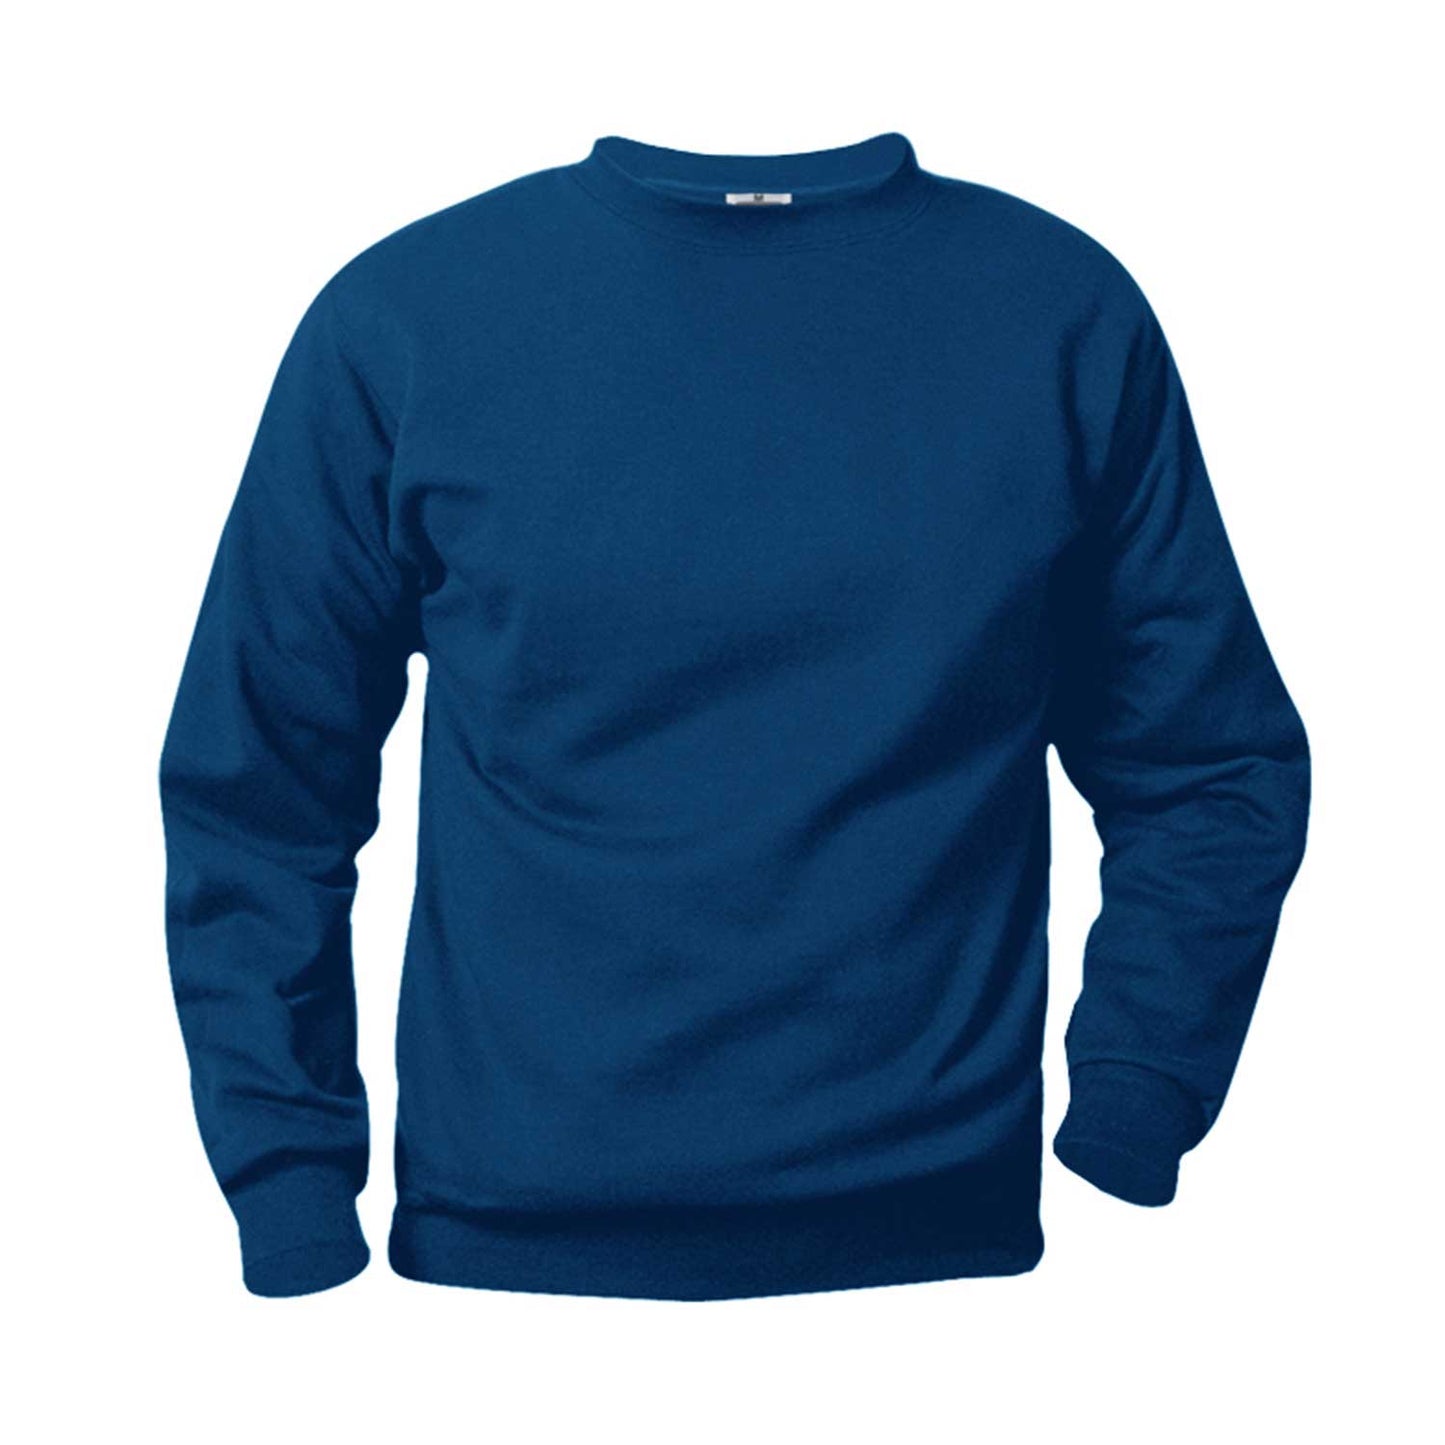 Unisex Crewneck Fleece Sweatshirt w/Logo - 1112